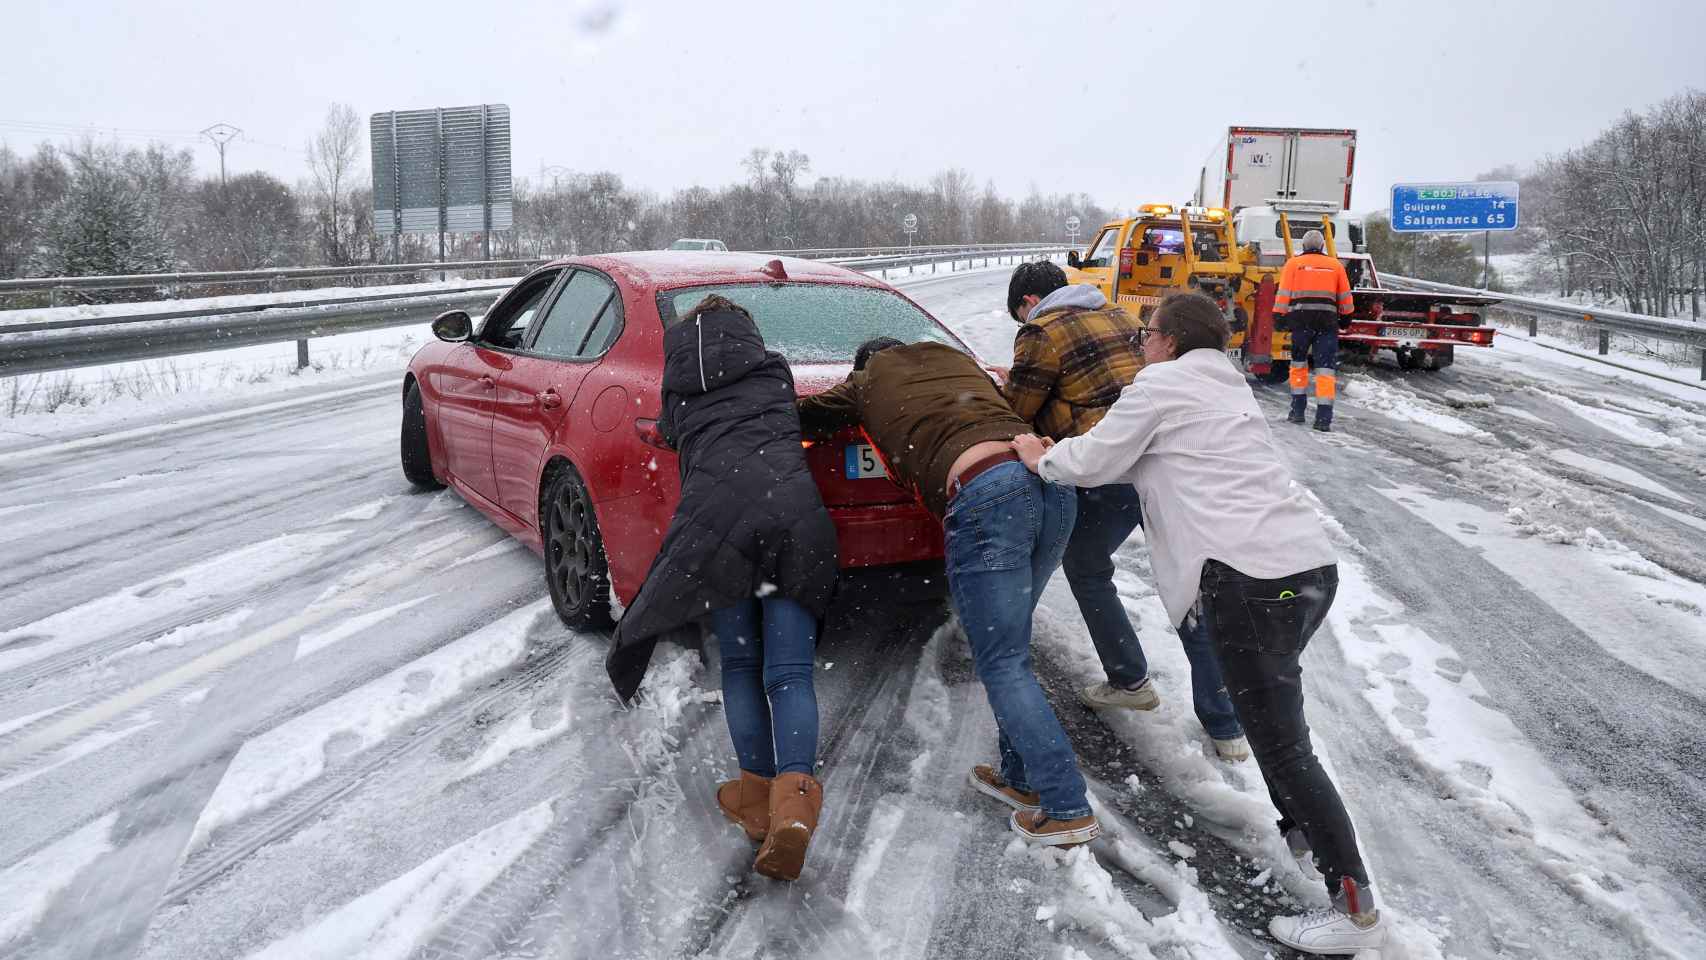 Varias personas empujan el coche tras quedarse atascado en una autovía por la nevada